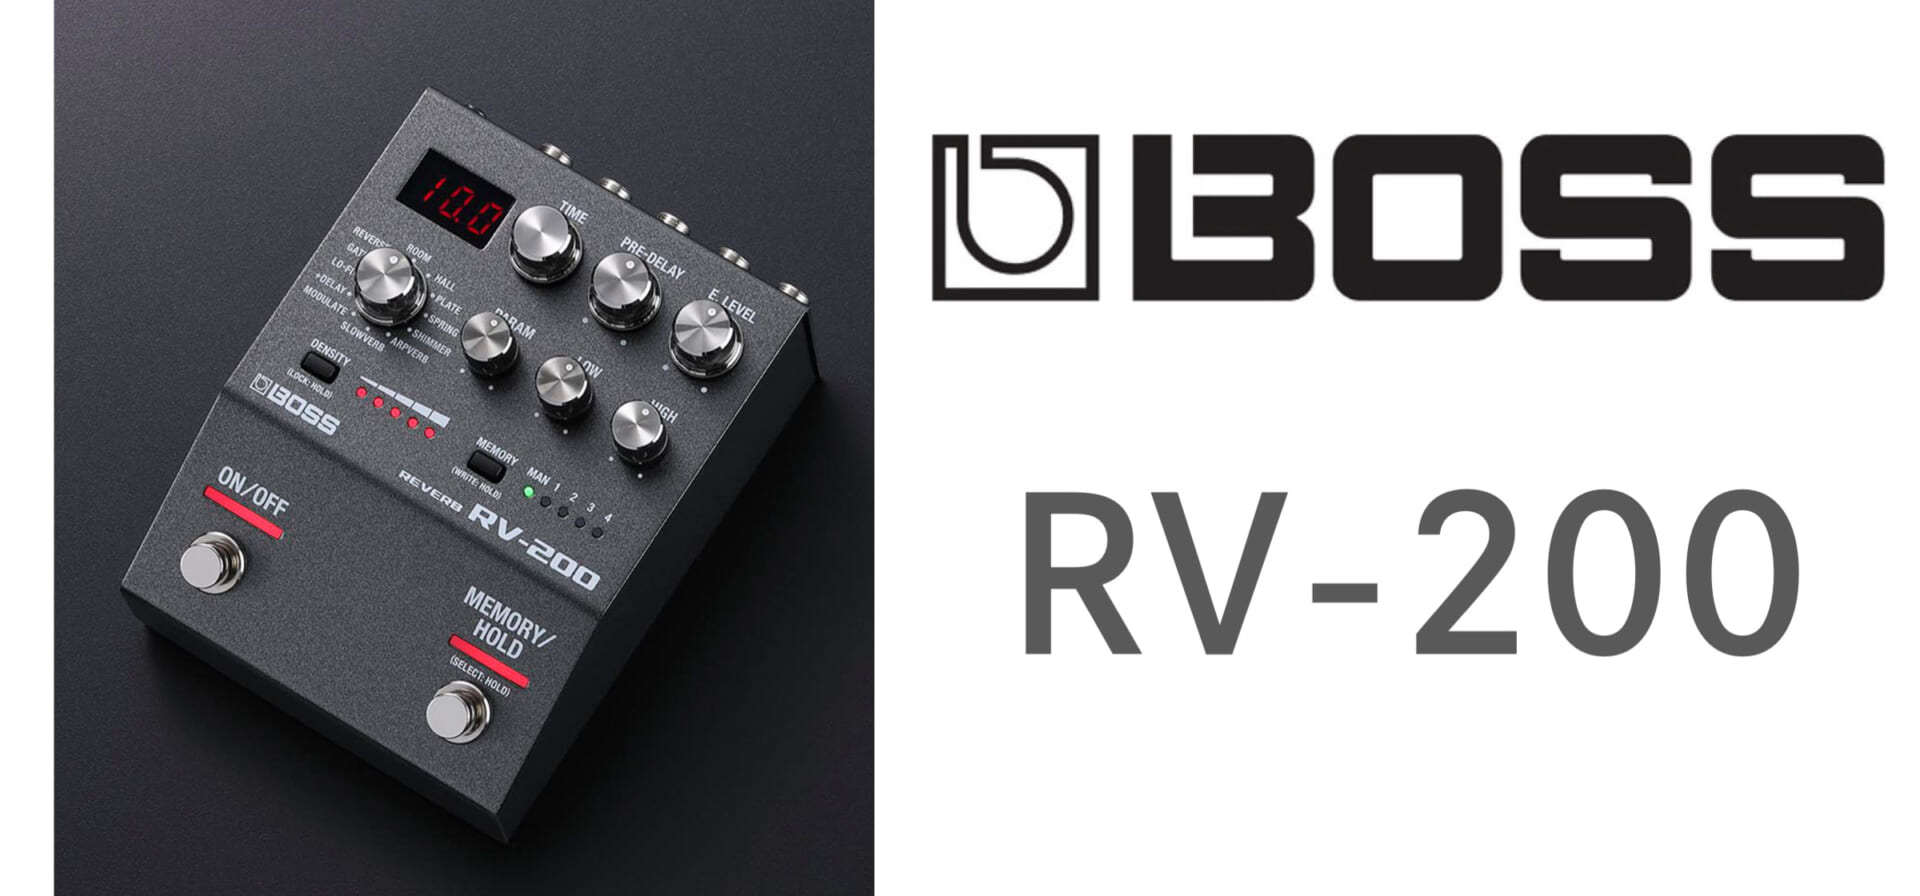 【動画あり】BOSSより、洗練されたデザインにクラス最高峰の音質を備えたリバーブRV-200登場